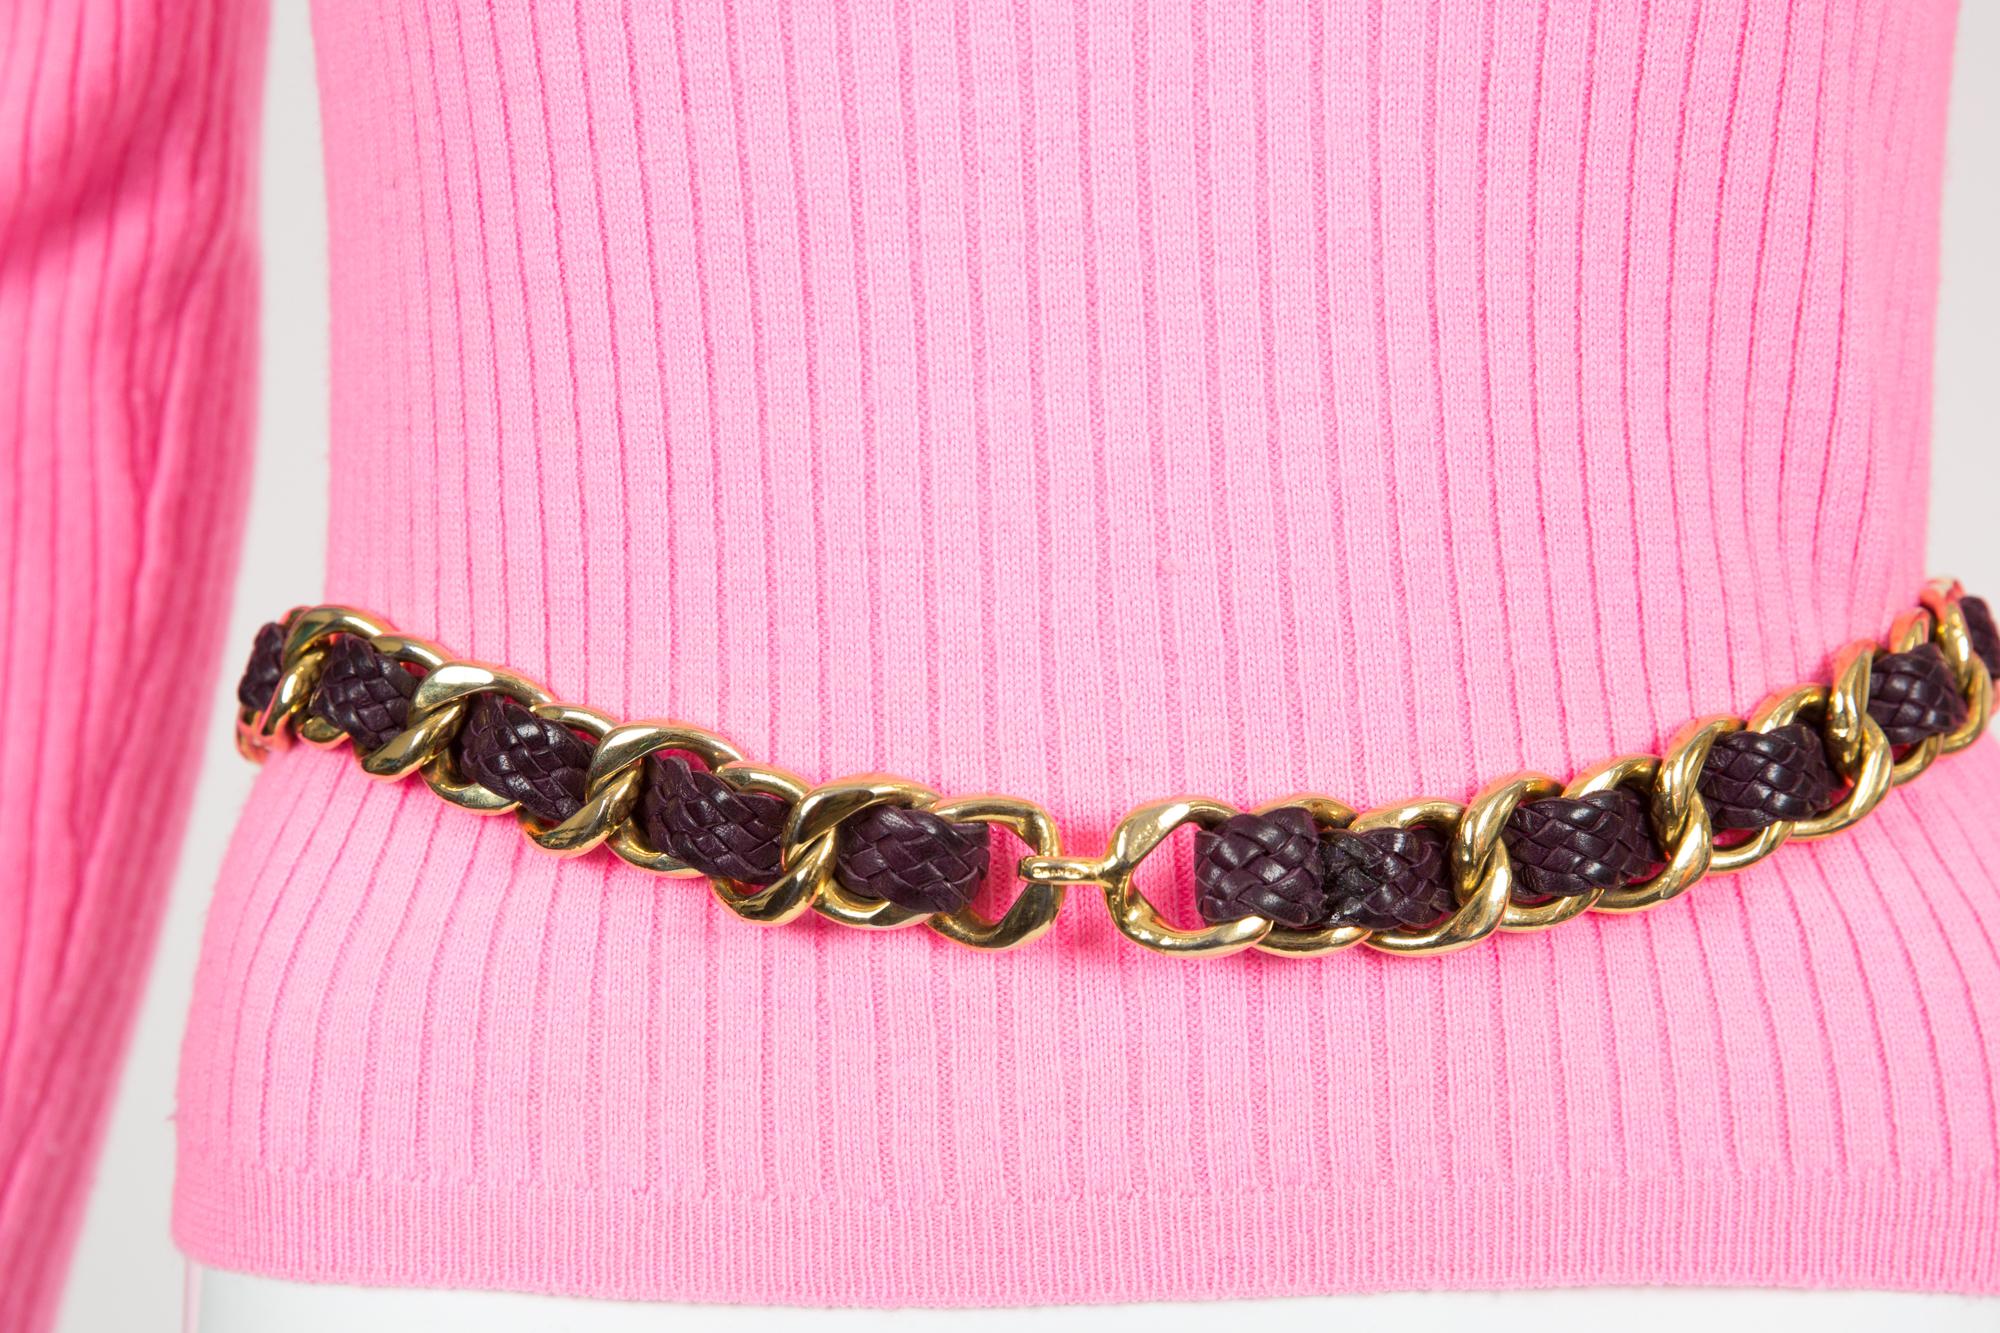 Chanel Goldkettengürtel aus pflaumenfarbenem Leder Größe:75 Goldfarbener Kettengürtel von Chanel Pre-Owned mit pflaumenfarbenem, geflochtenem Lederdetail, Hakenverschluss vorne und Chanel-Logo auf dem vorderen Haken. 
Geschätzte Gürtelgröße: